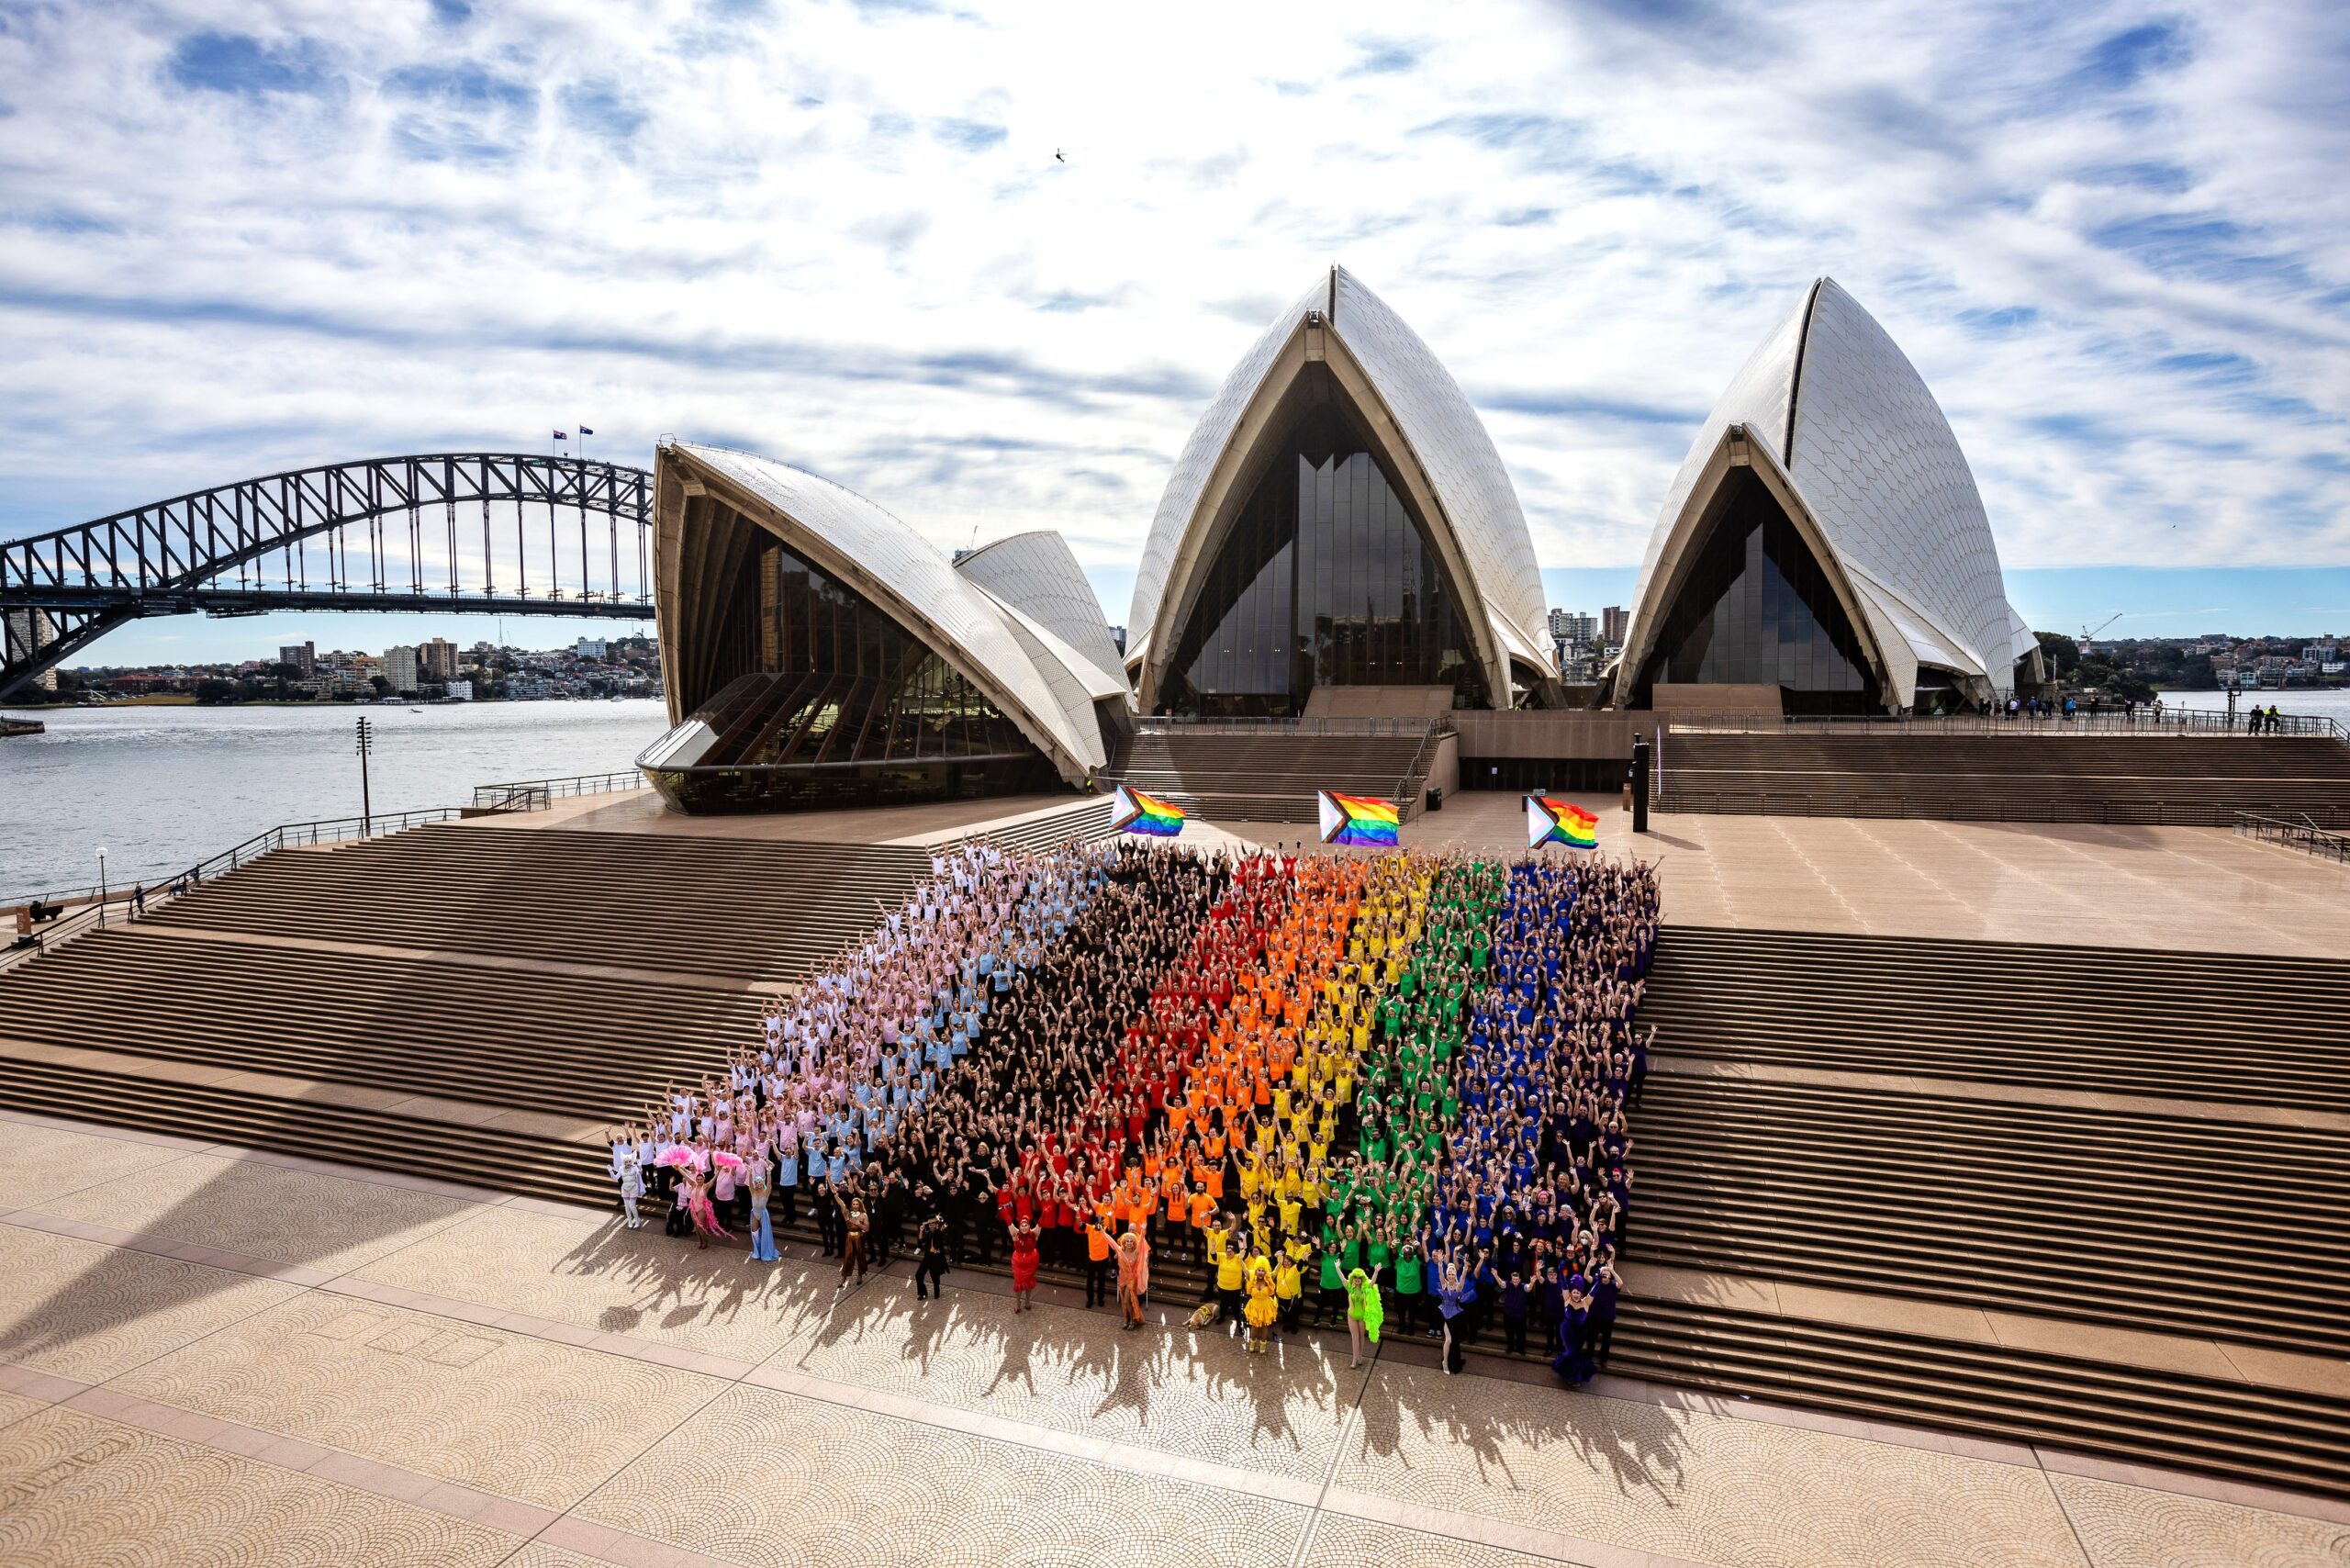 Sydney WorldPride 2023 program revealed!